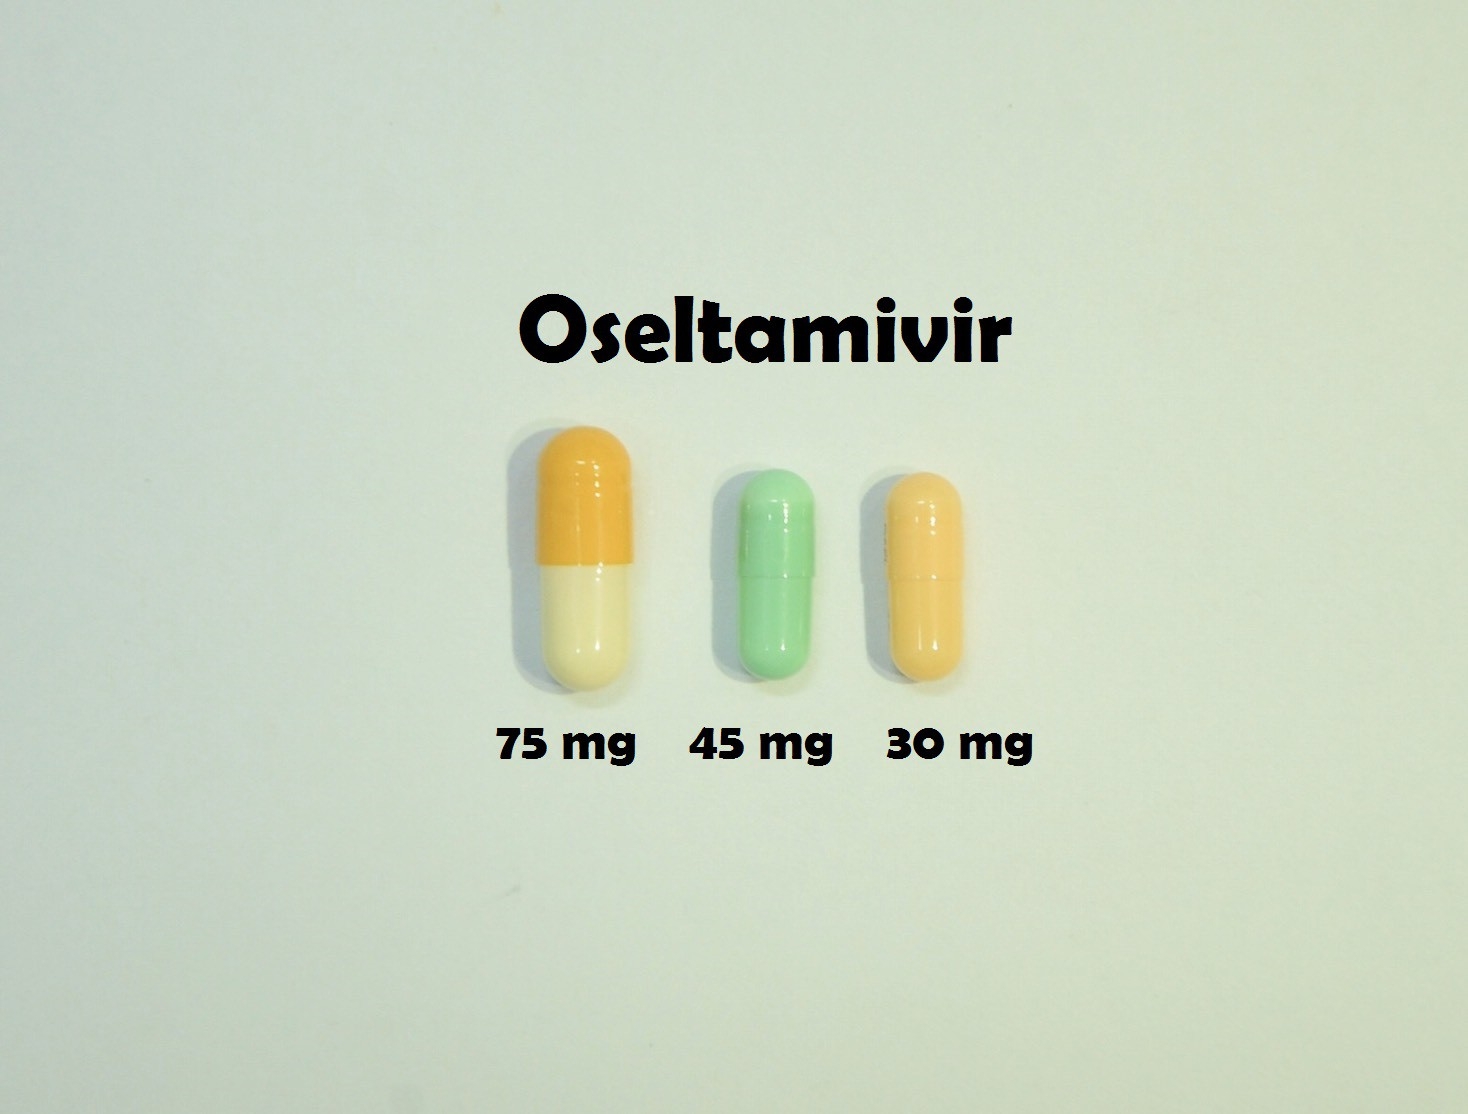 ยาที่มีหลายความแรง : Oseltamivir 30 mg, 45 mg และ 75 mg